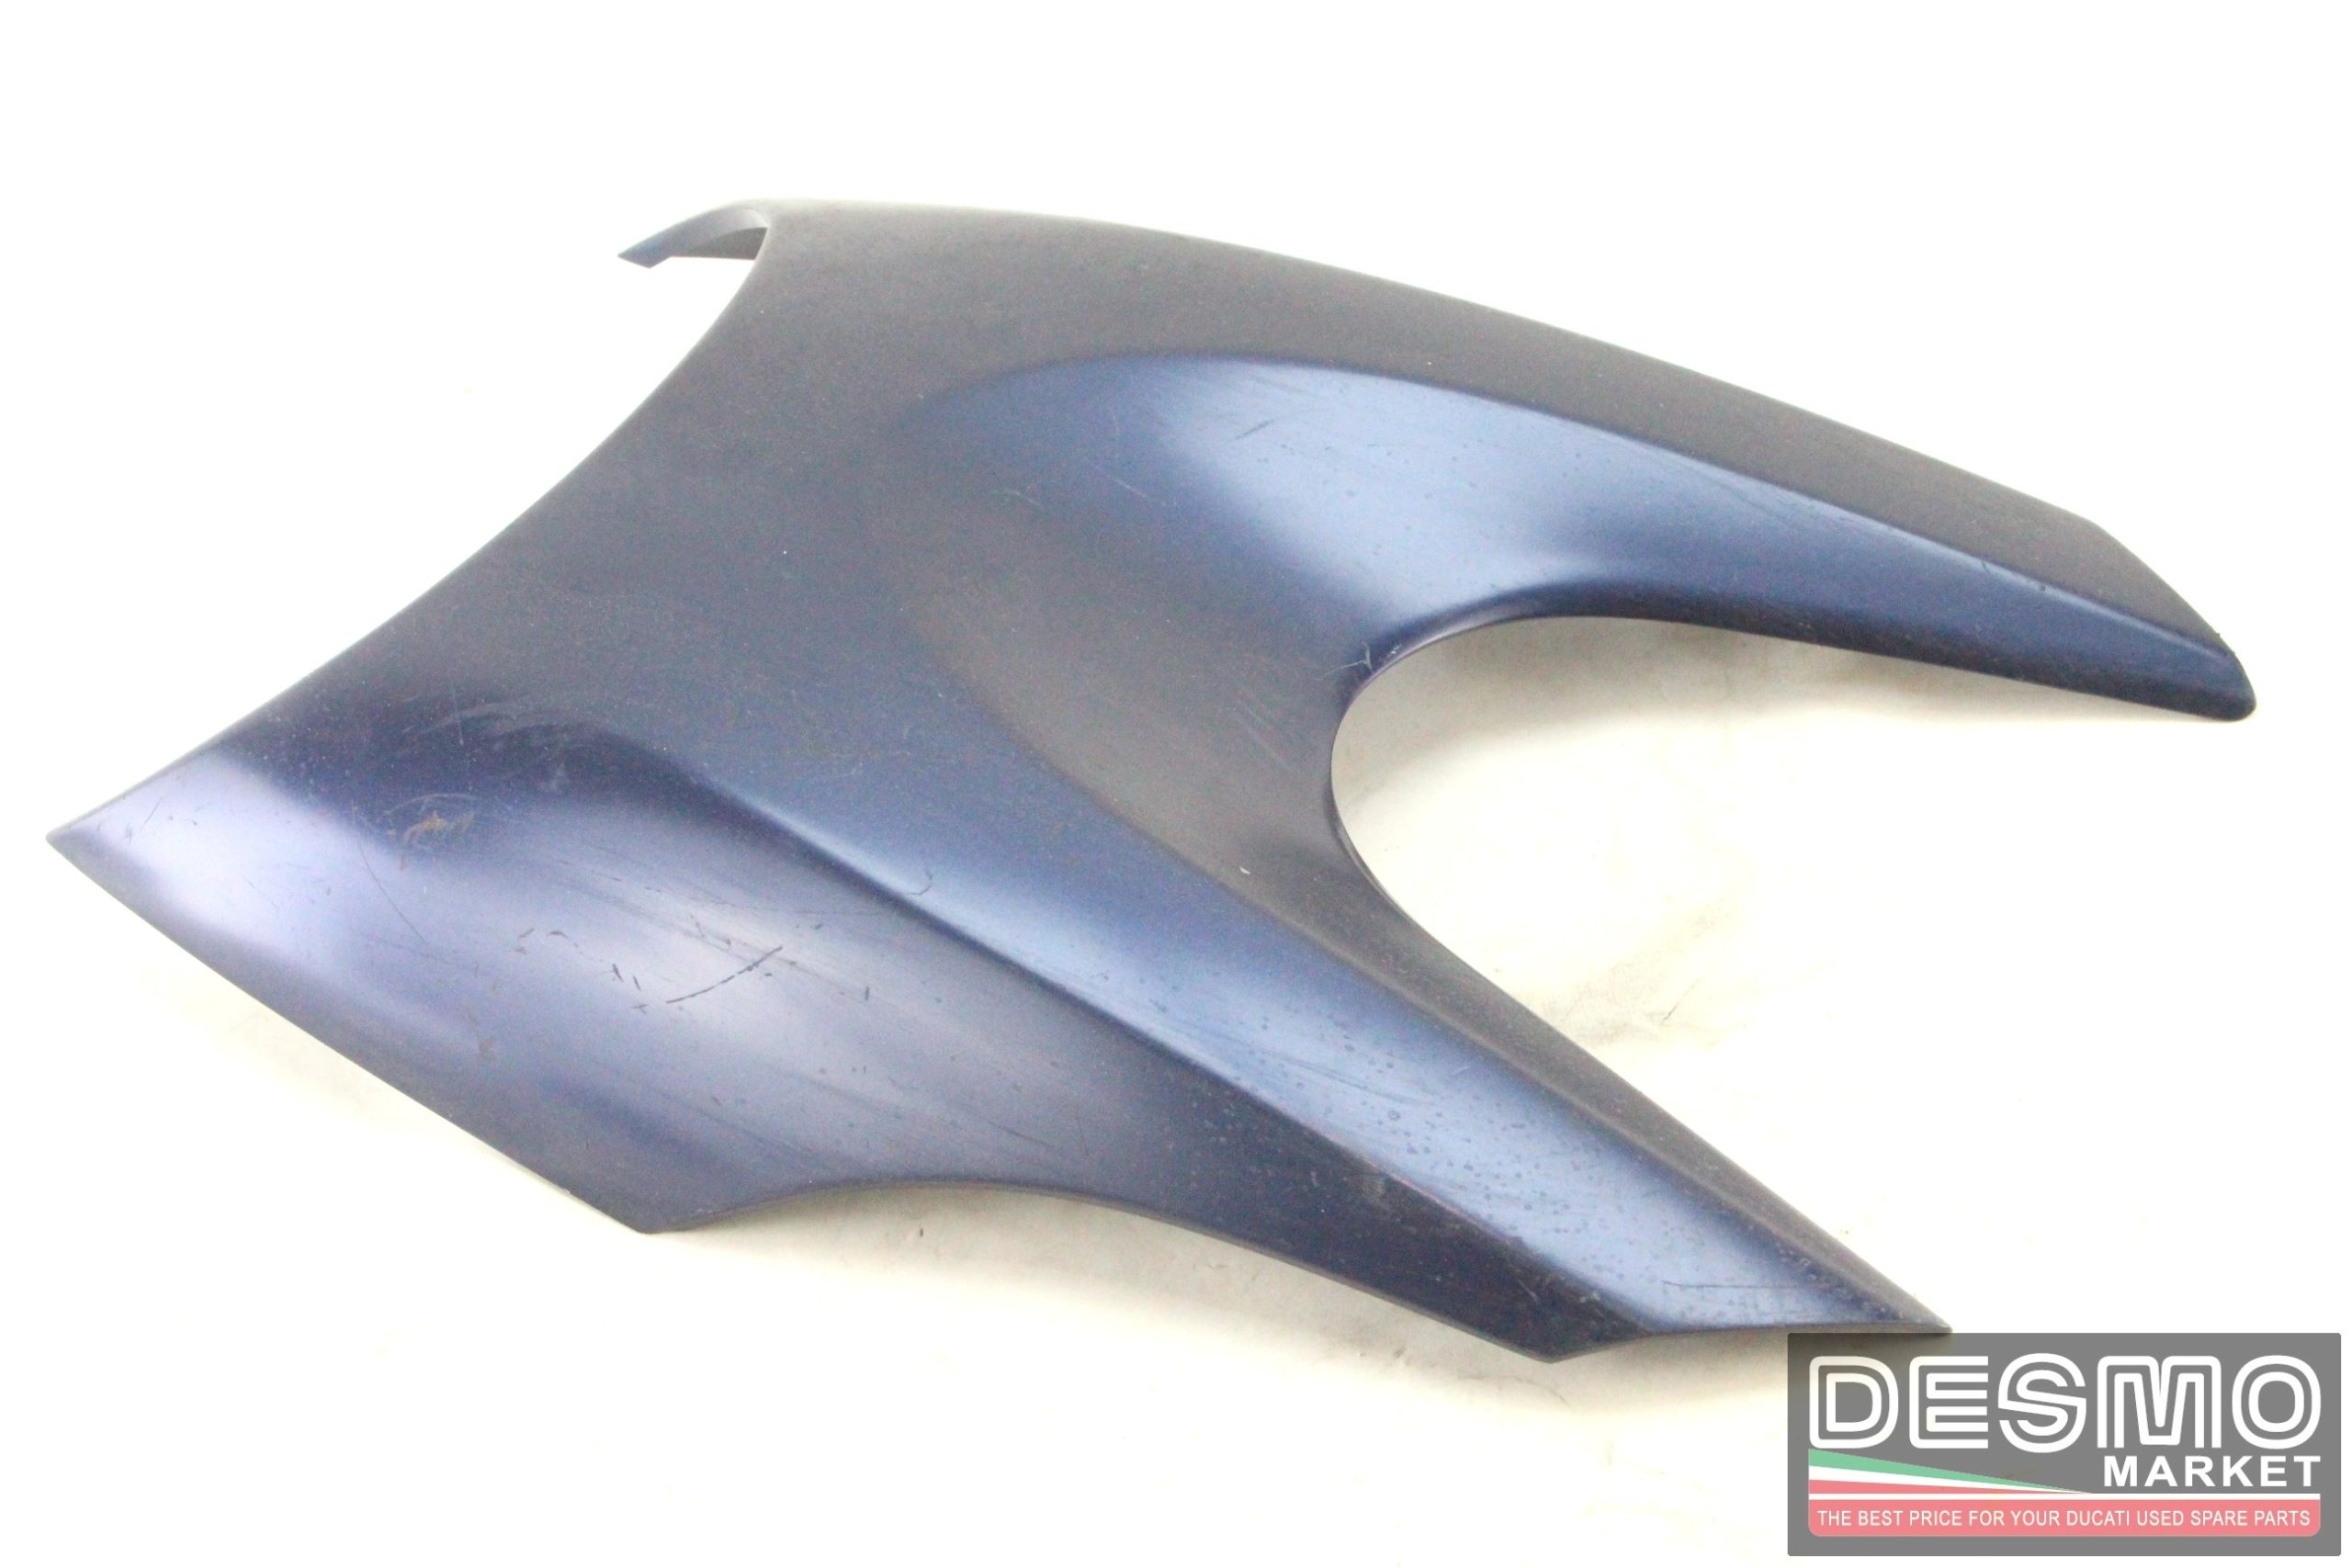 Cupolino fanale anteriore blu Ducati Diavel